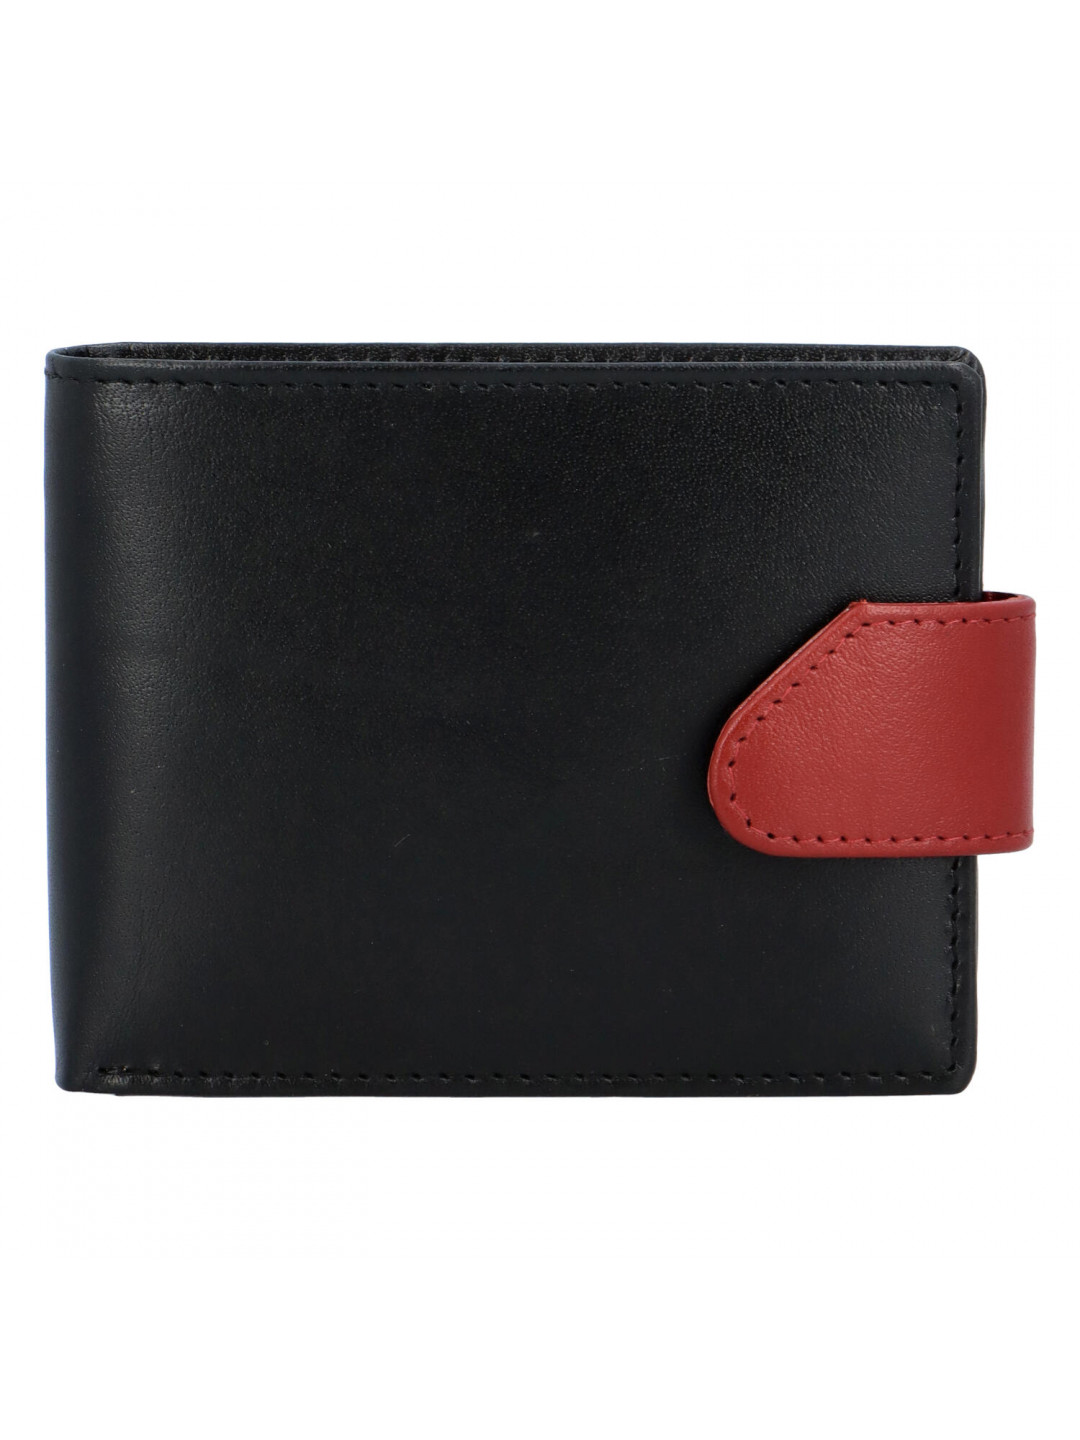 Hladká pánská černo červená kožená peněženka – Tomas 76VT